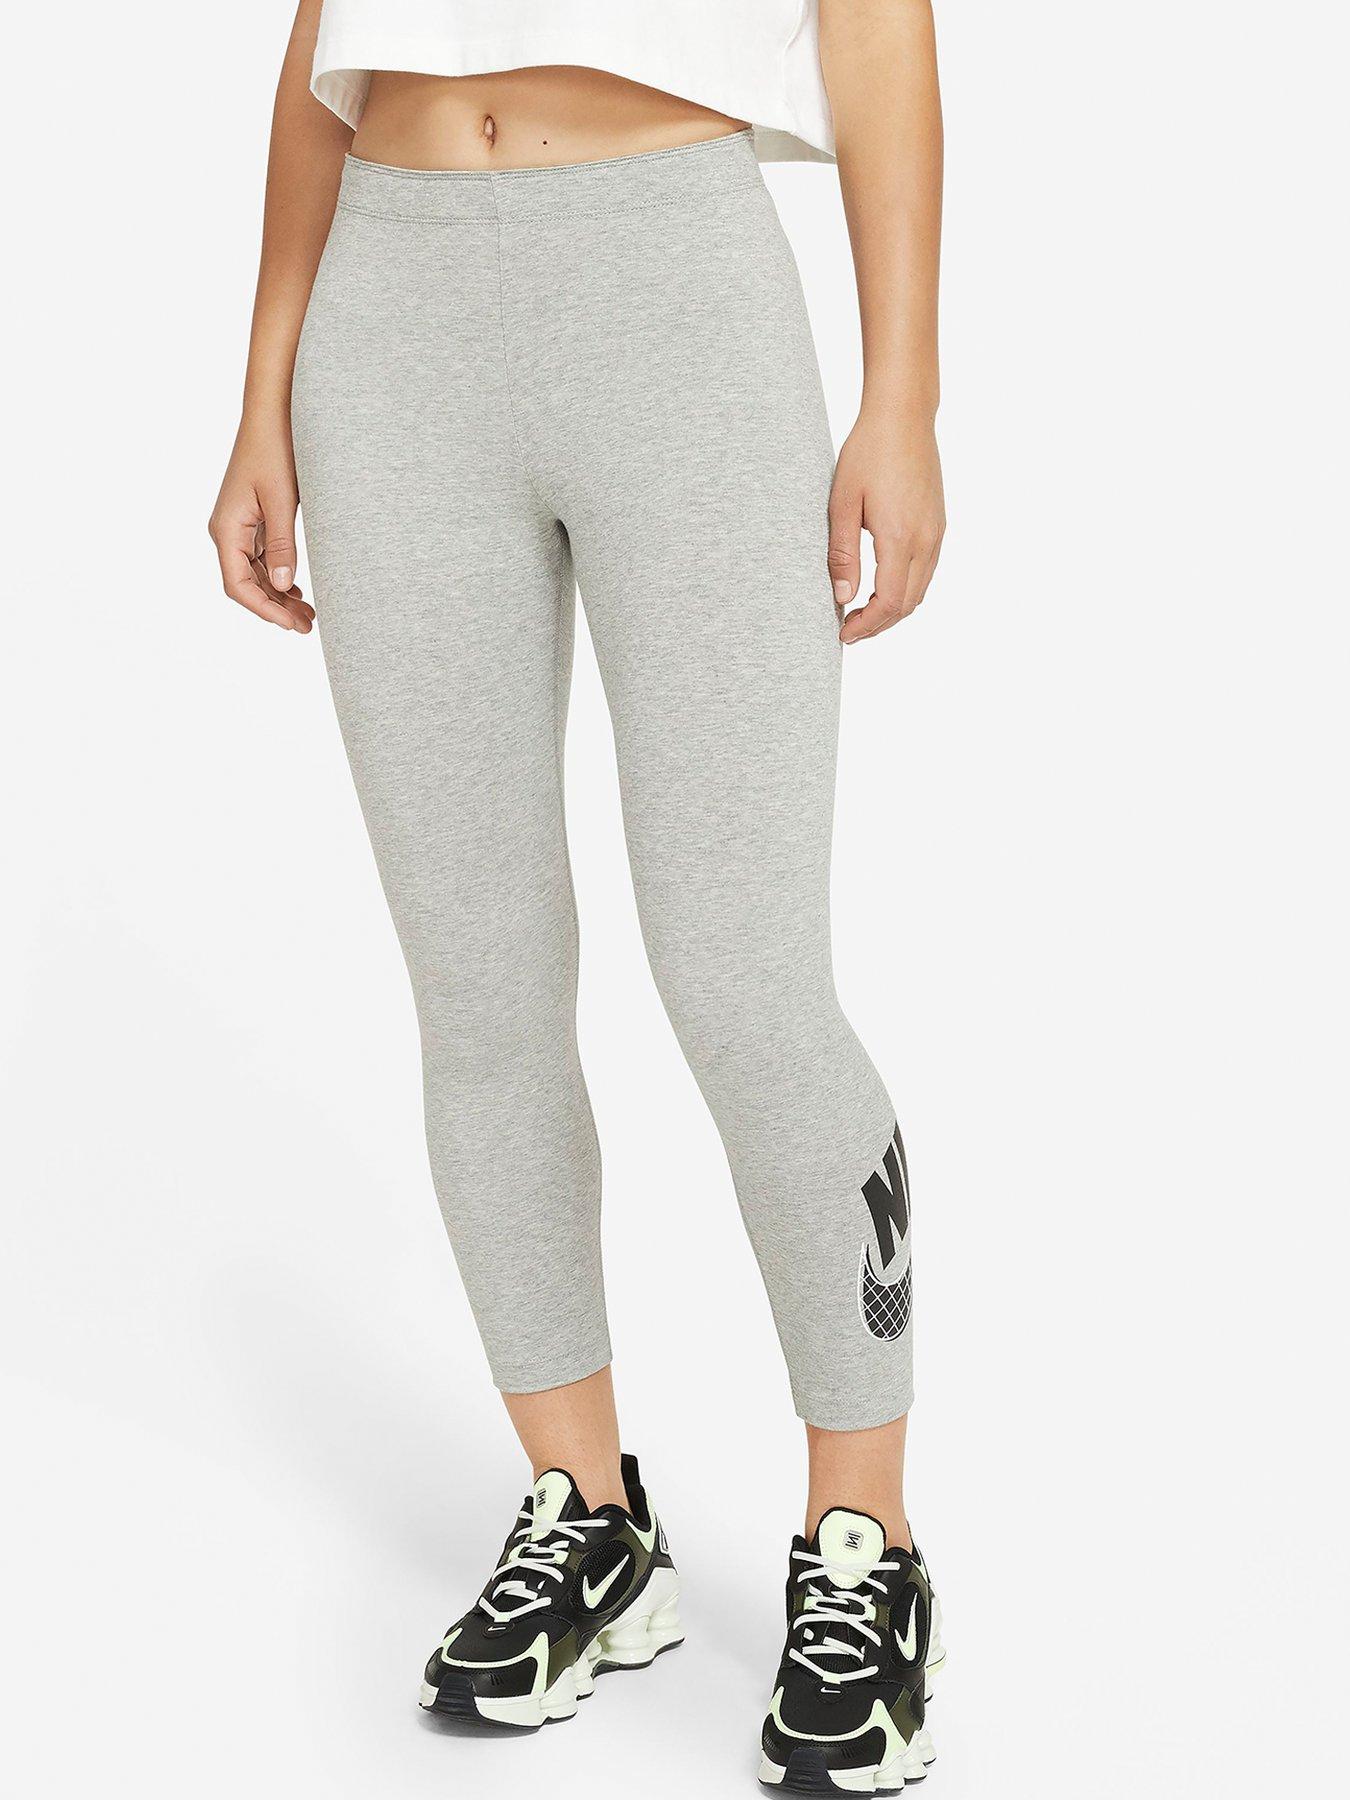 grey nike cotton leggings